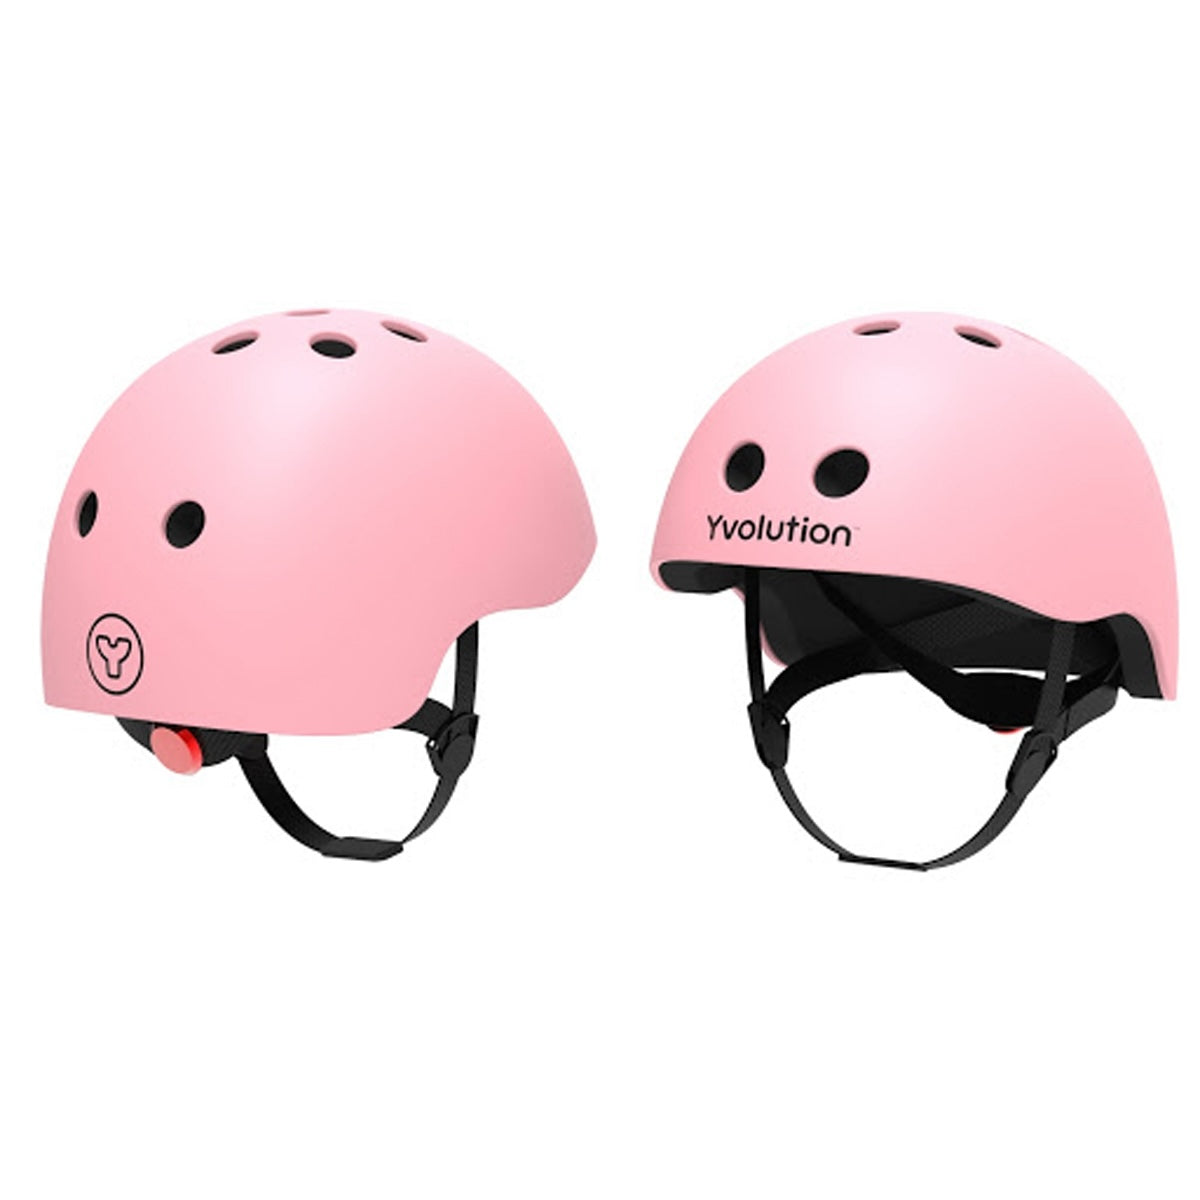 Bescherm het hoofdje van jouw kindje tijdens het fietsen, steppen, skaten of skateboarden met de helm van het merk Yvolution in de kleur roze. Verstelbaar van 44 tm 52 cm. Ook in de kleur blauw verkrijgbaar. VanZus